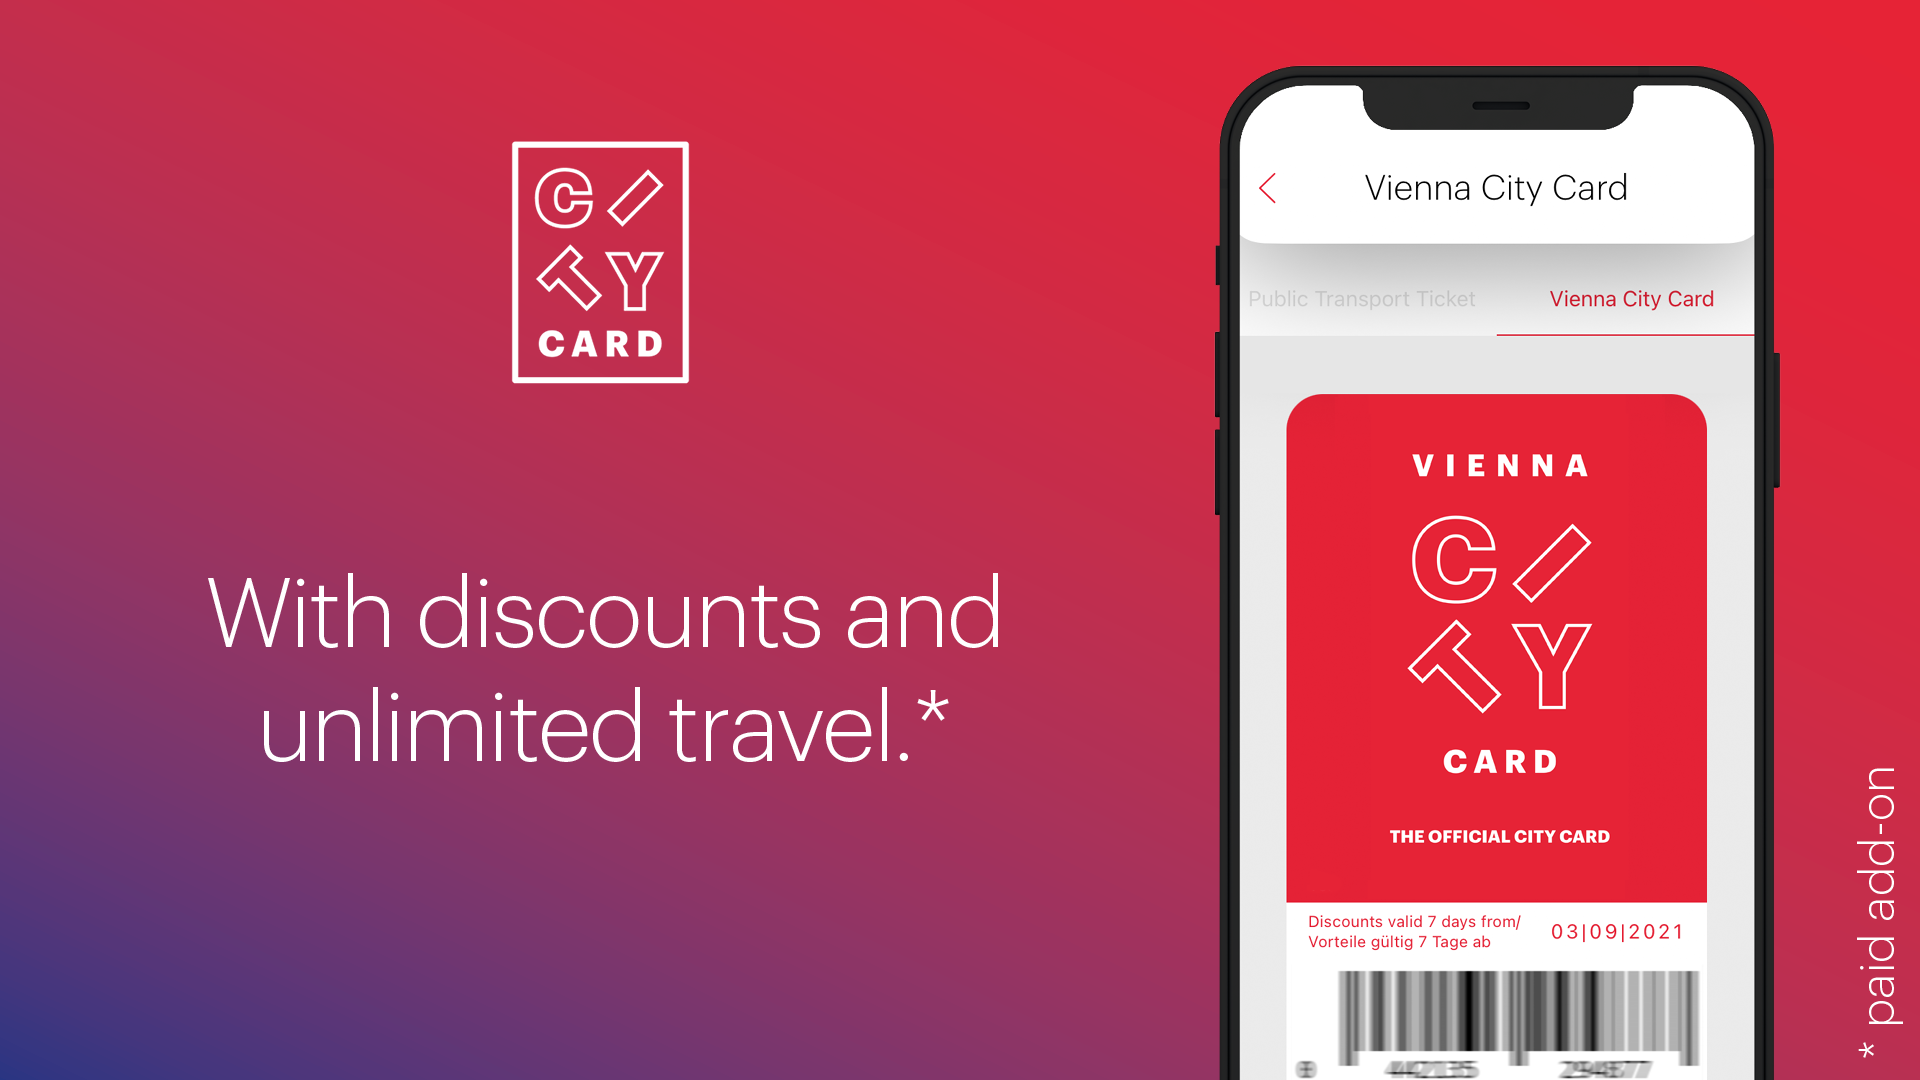 Приложение-путеводитель по городу ivie – Vienna City Card